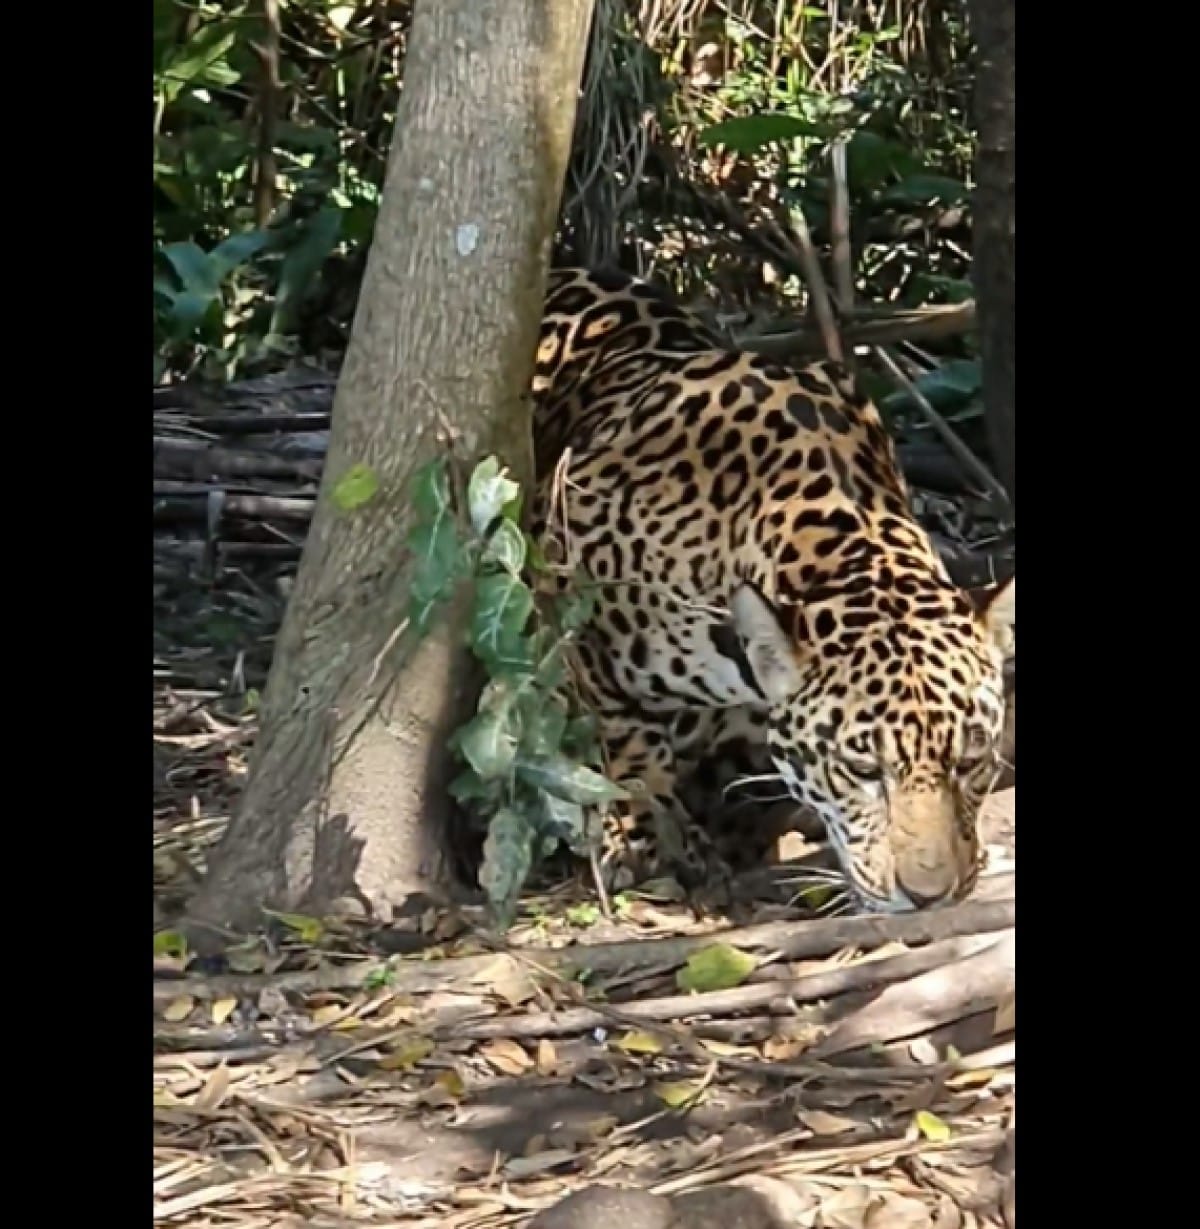 Onça-pintada é o maior felino encontrado no Pantanal, ocupando o o topo da cadeia alimentar, sendo portanto, indispensável para o equilíbrio ecológico.